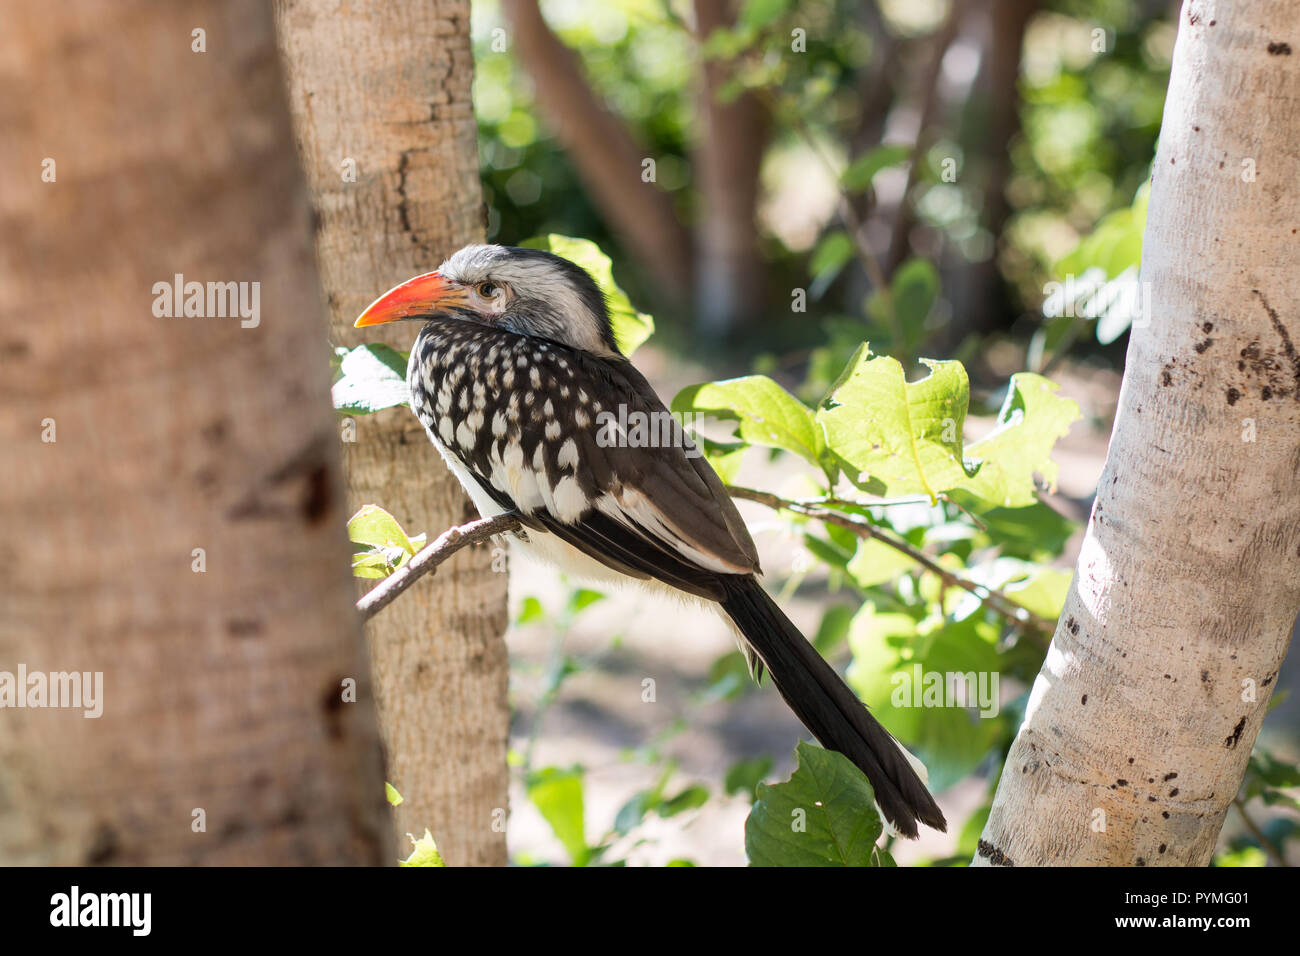 Southern Red-billed Hornbill juvinile in einem Baum Nahaufnahme in die Kamera schaut thront. Vogel mit weißen Gefiederflecken, getupft Flügeln und langen roten Rechnung. Stockfoto